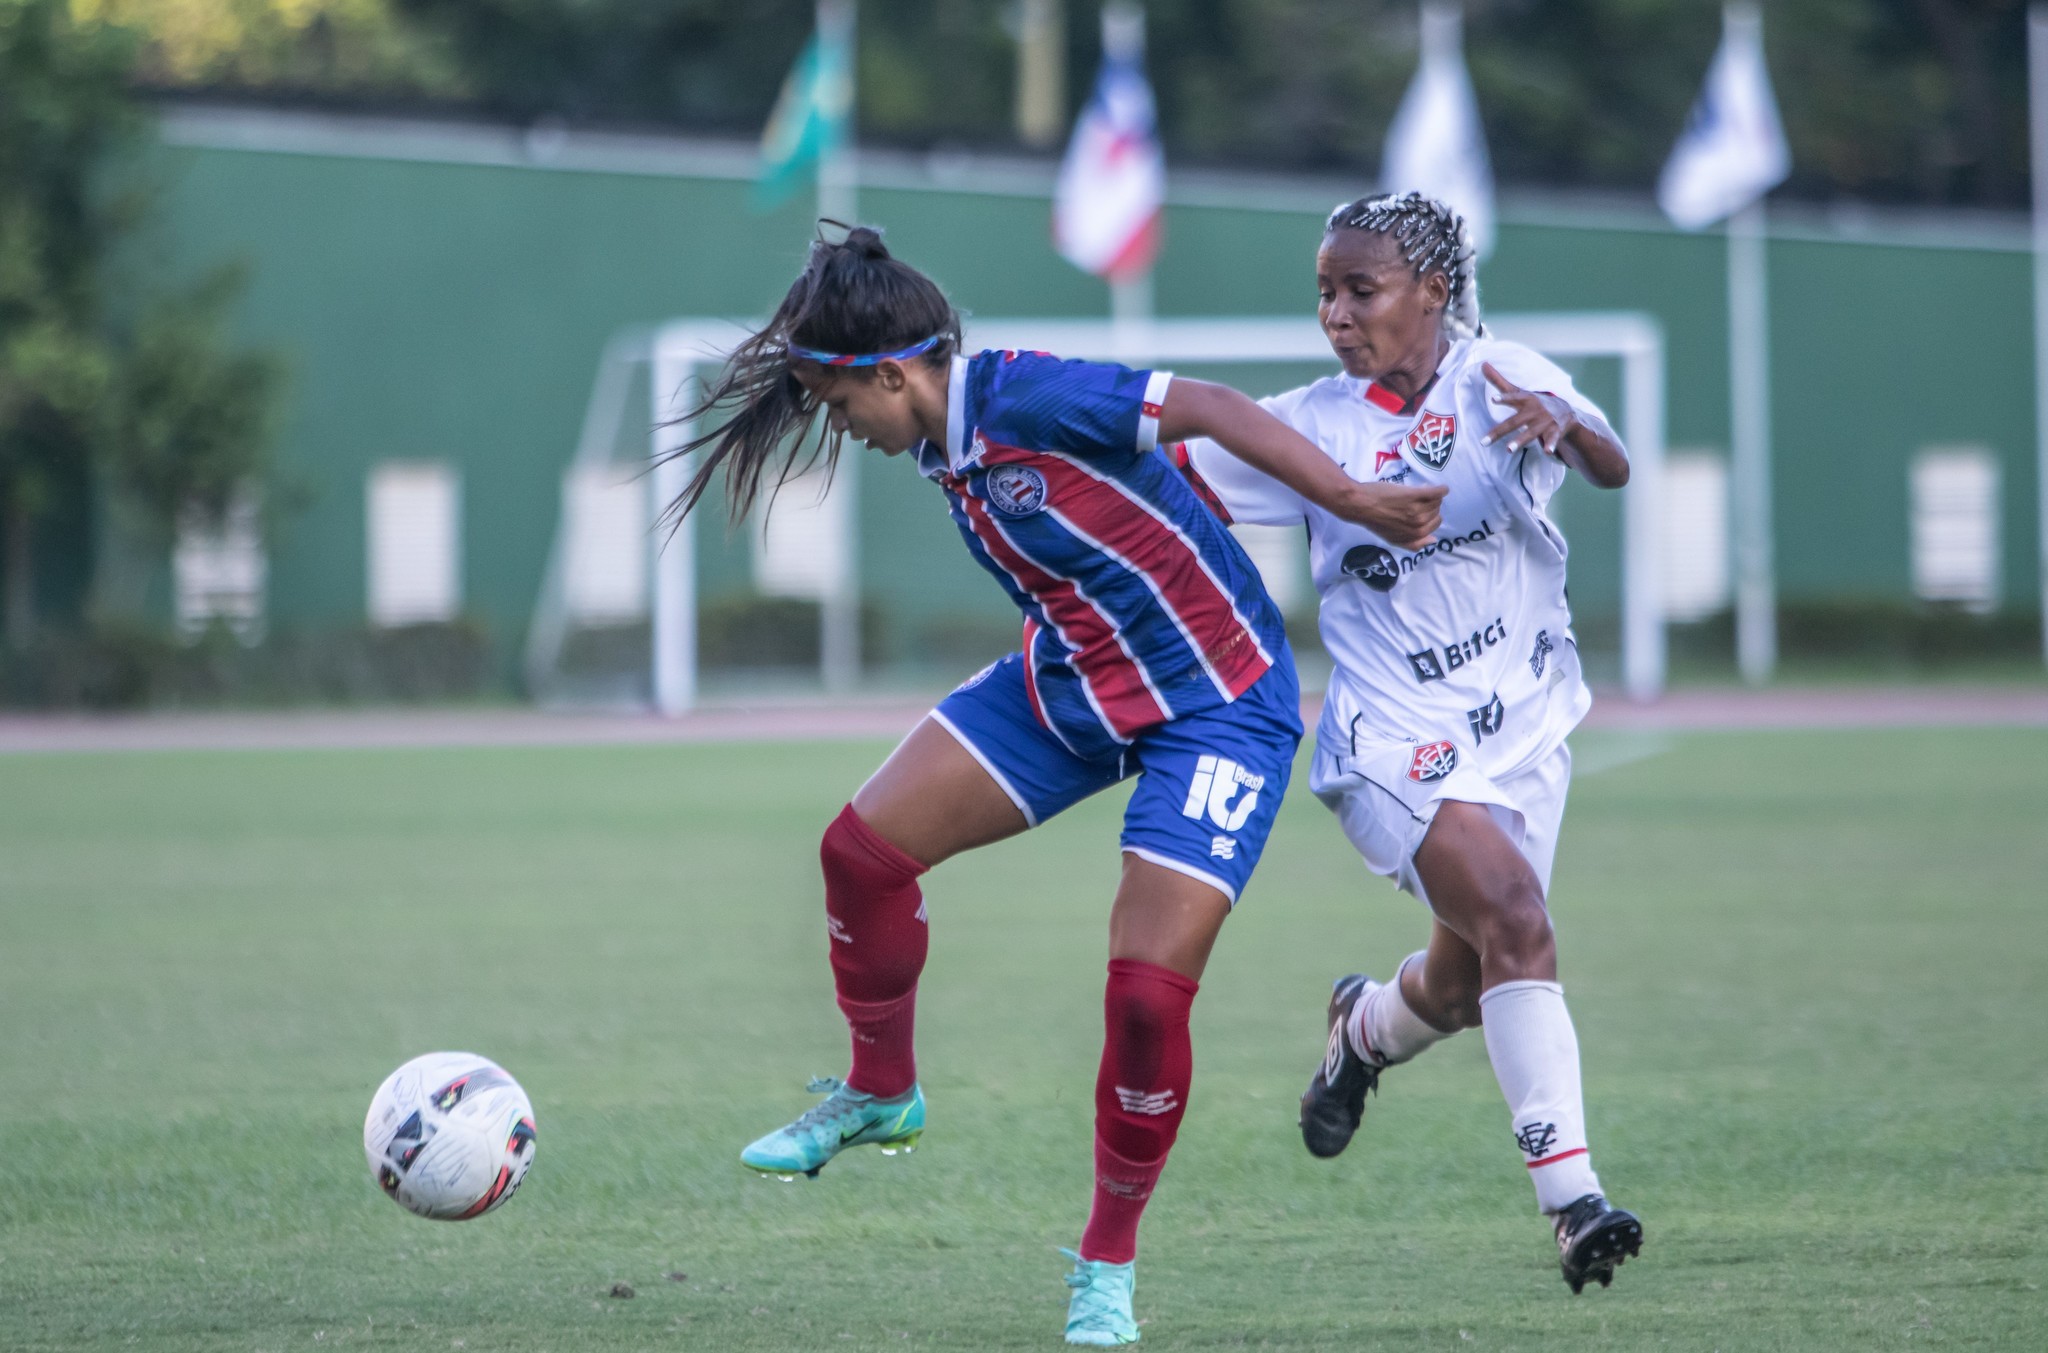 Vitória e Bahia se enfrentam no Barradão e abrem final inédita do Campeonato Baiano Feminino